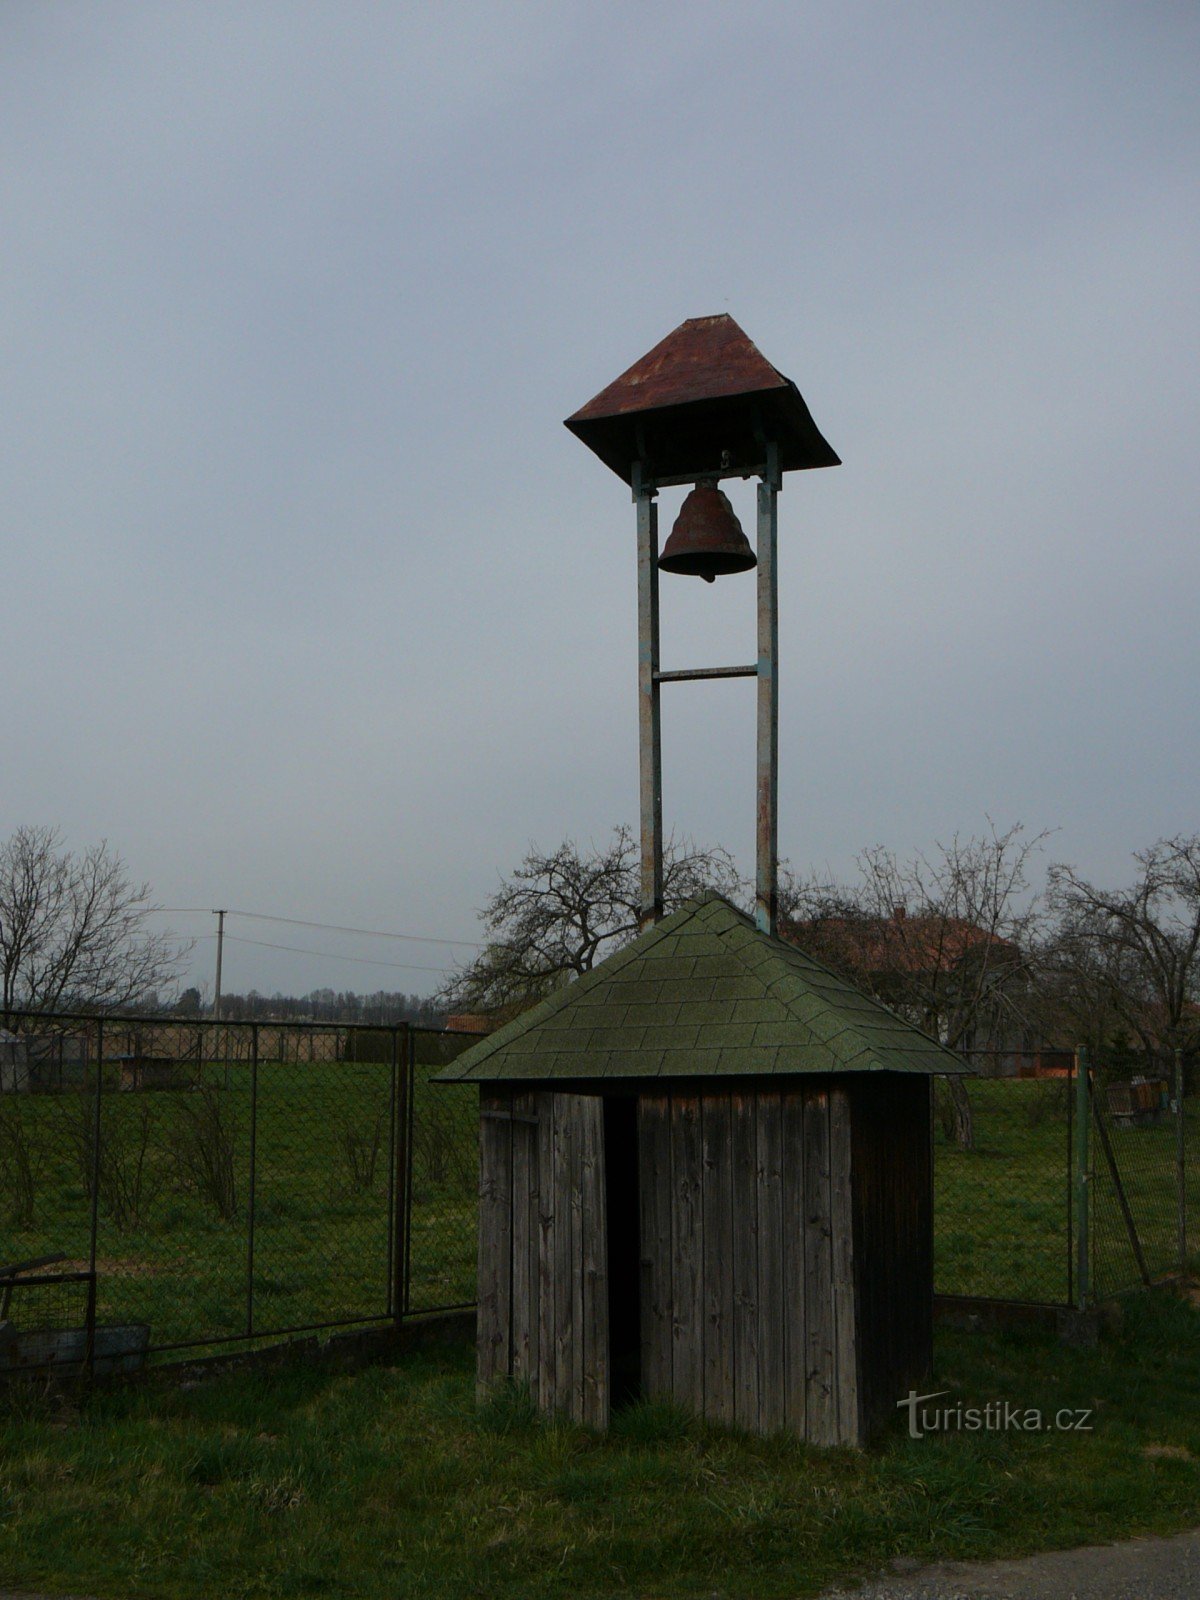 tháp chuông Kocurovice